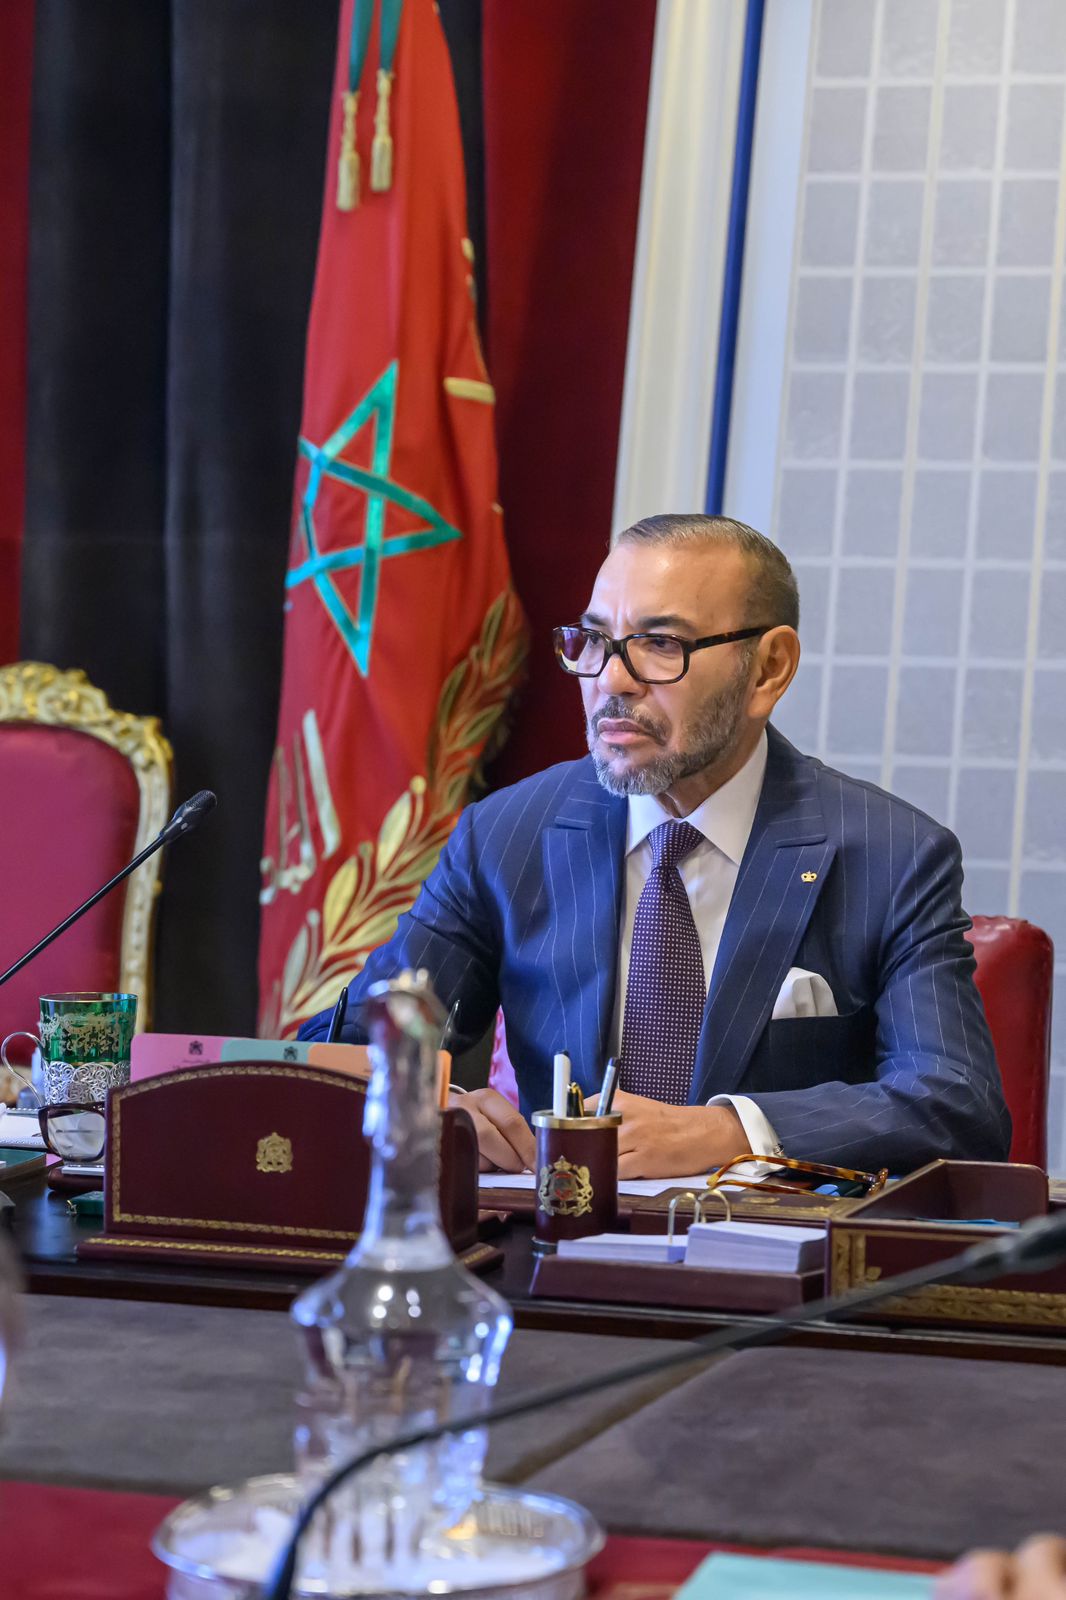 120 miliardi di dirham (circa 31 miliardi di euro) stanziati dal Re Mohammed VI per le regioni del Marocco distrutte dal terremoto